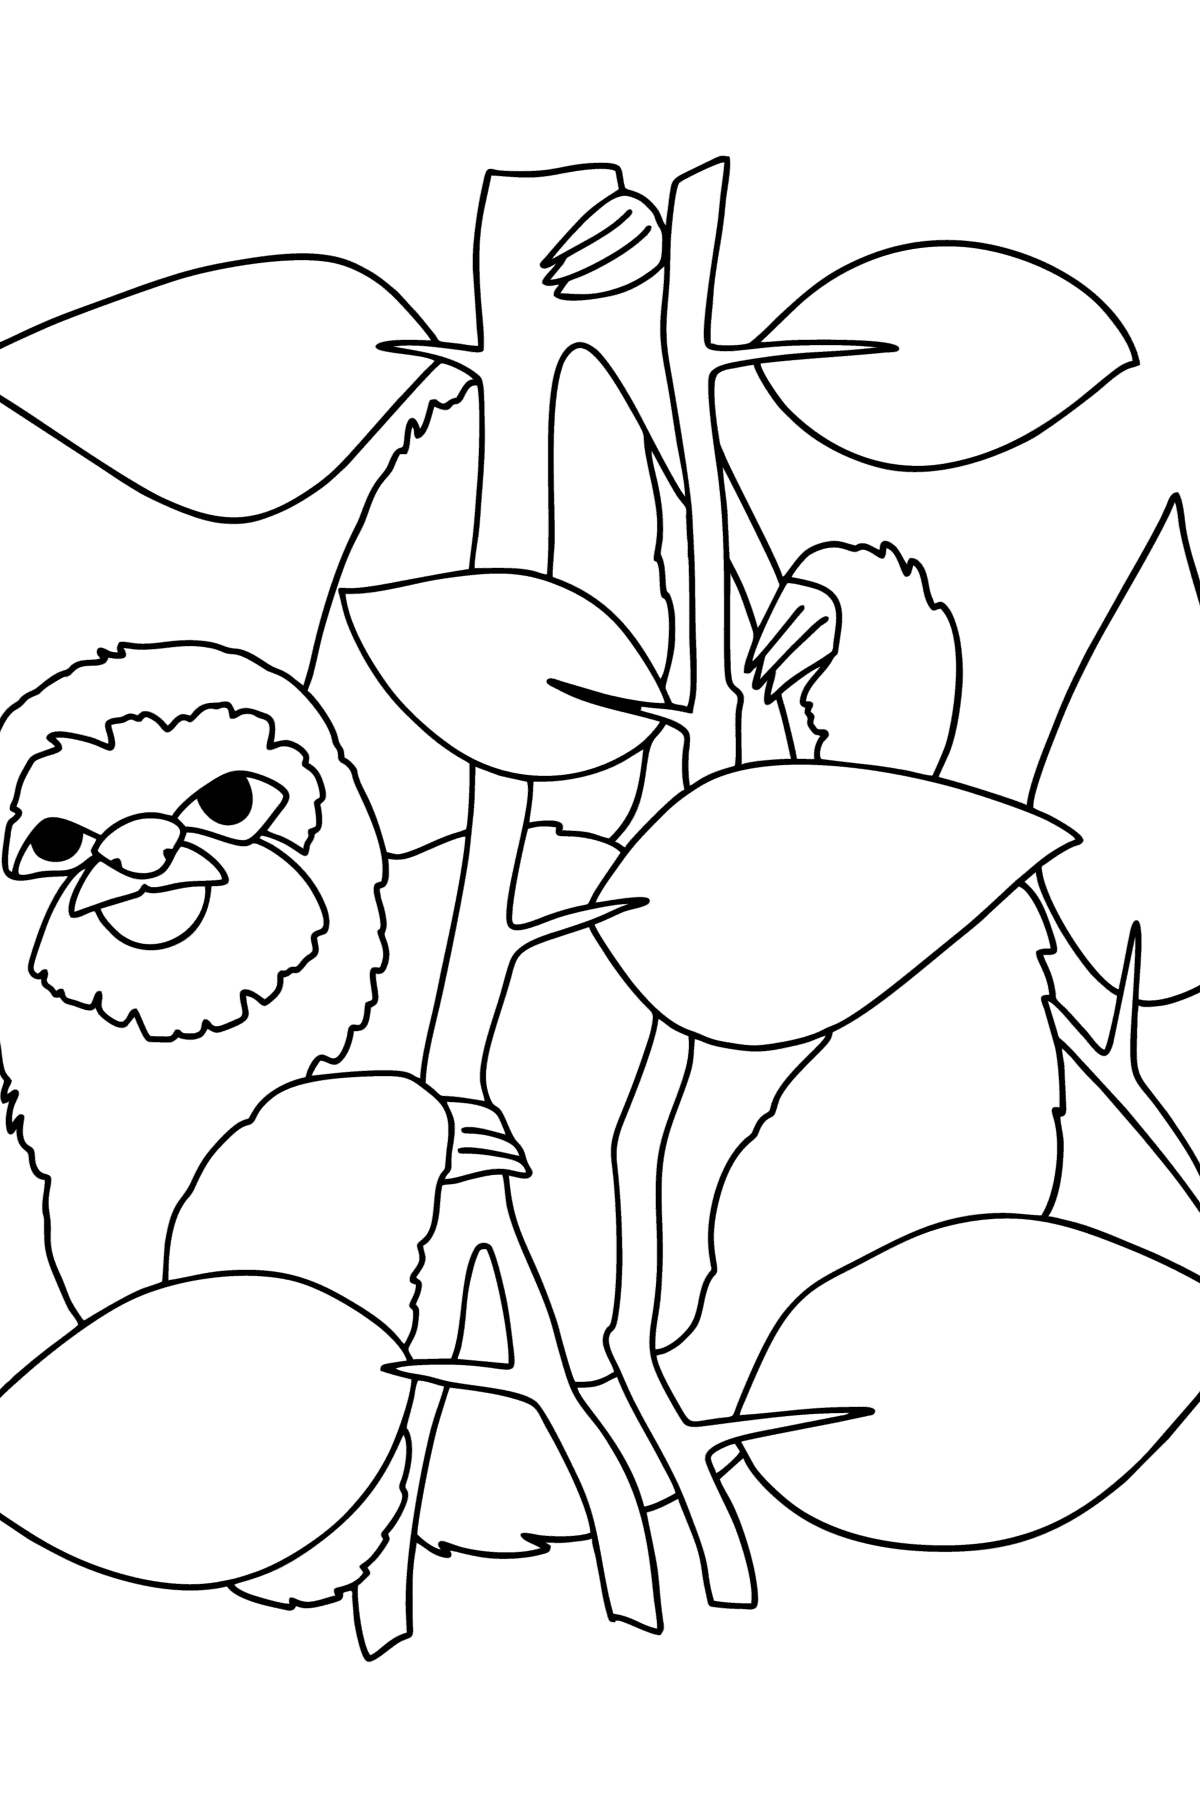 Раскраска Ленивец Джунгли - Картинки для Детей